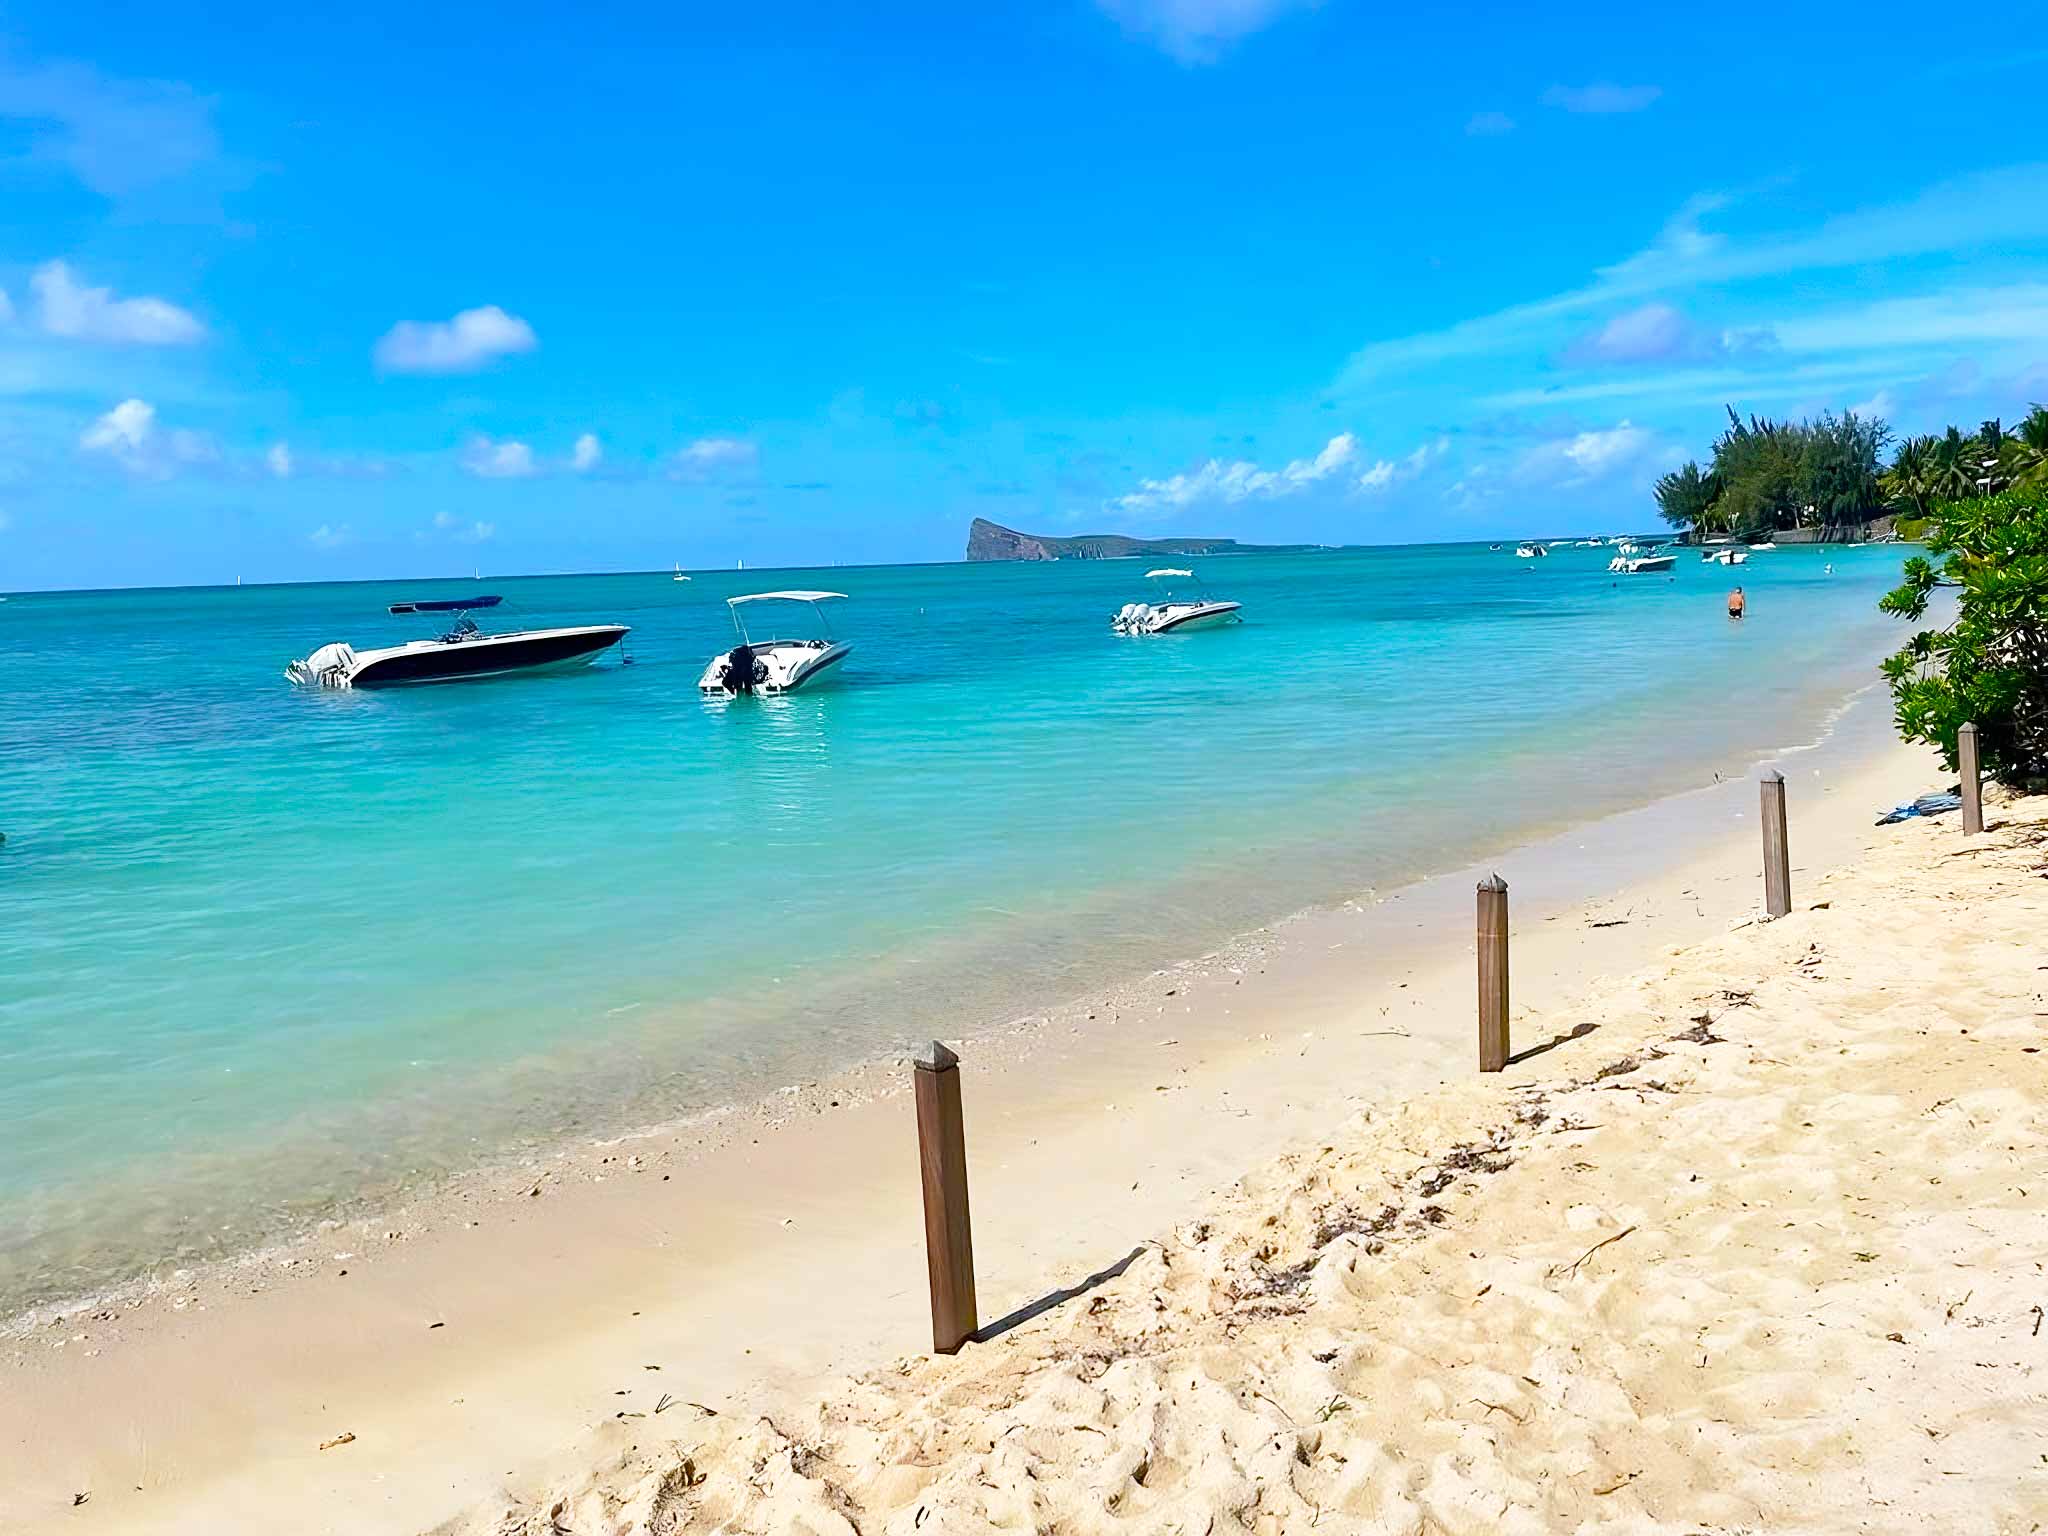 Découvrez une plage paradisiaque avec des activités nautiques excitantes pour vos vacances - Pereybere Living - Maurice